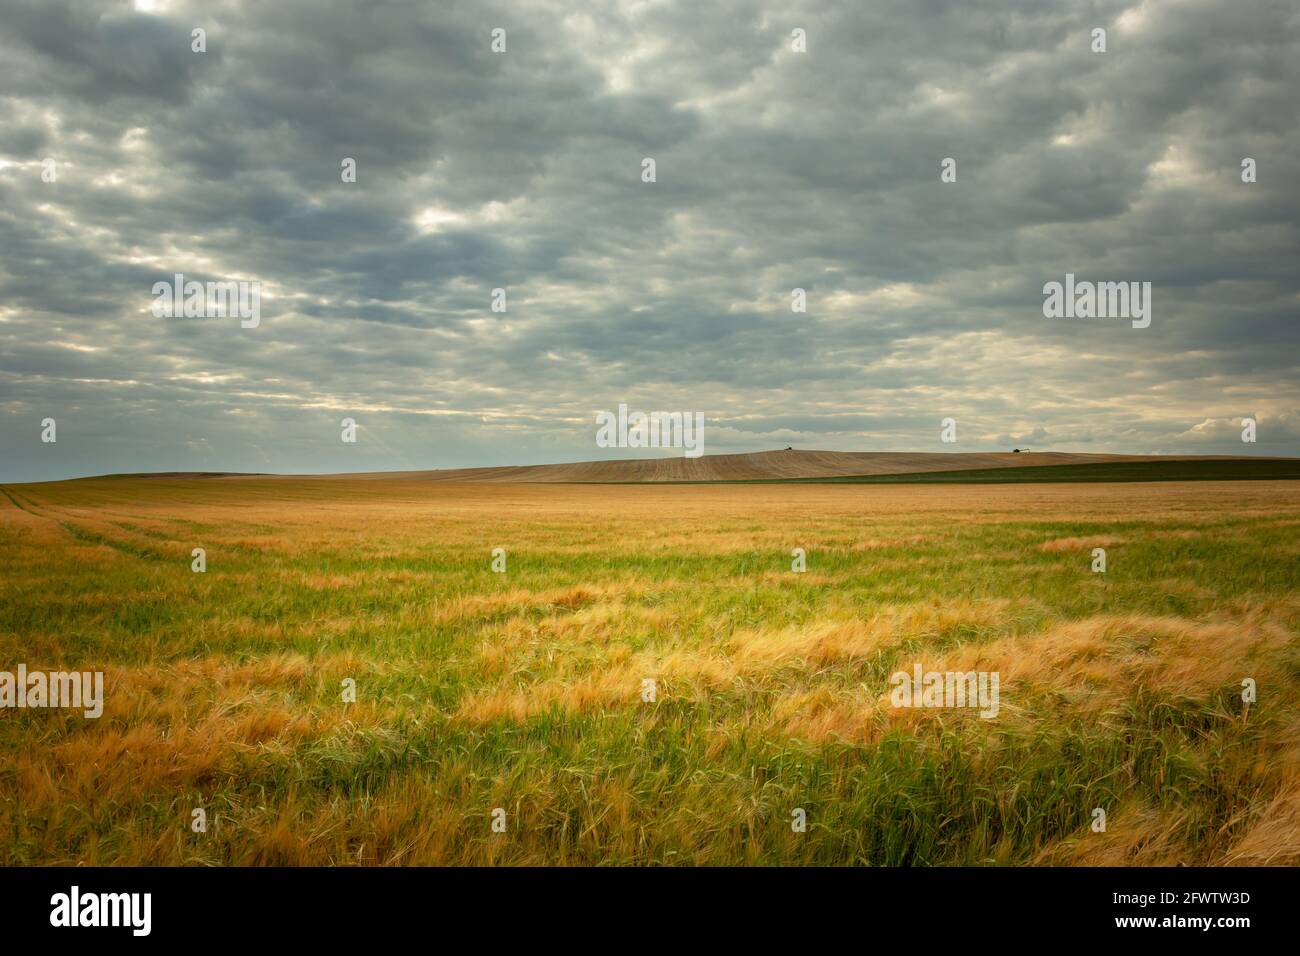 Immense champ avec grain et ciel nuageux, Staw, Lubelskie, Pologne Banque D'Images